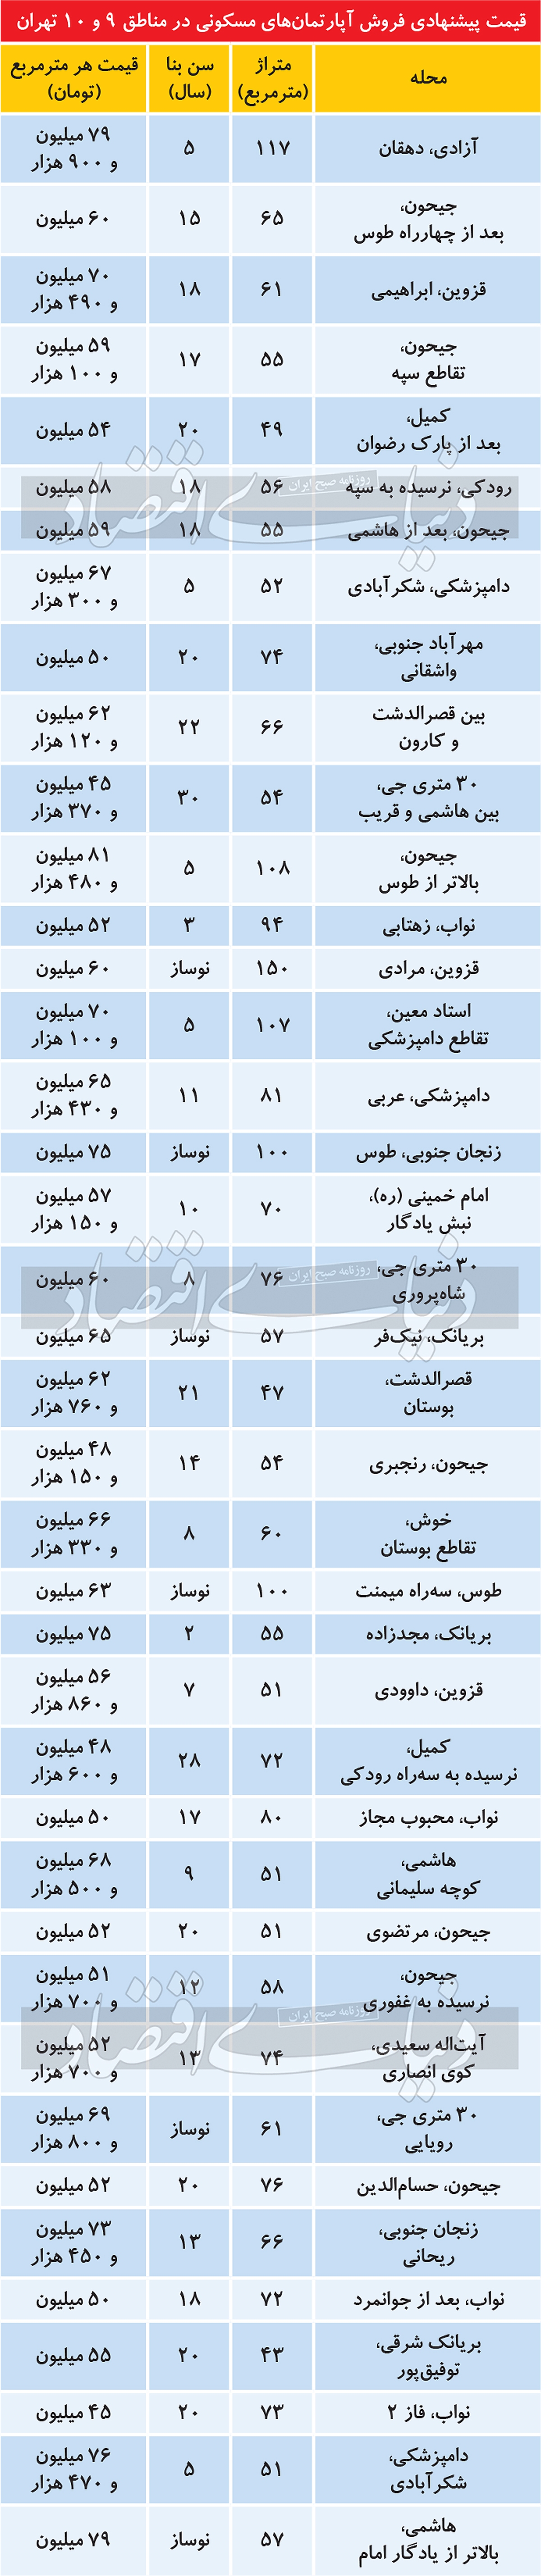 تغییرات قیمت مسکن در مناطق ۹ و ۱۰ تهران